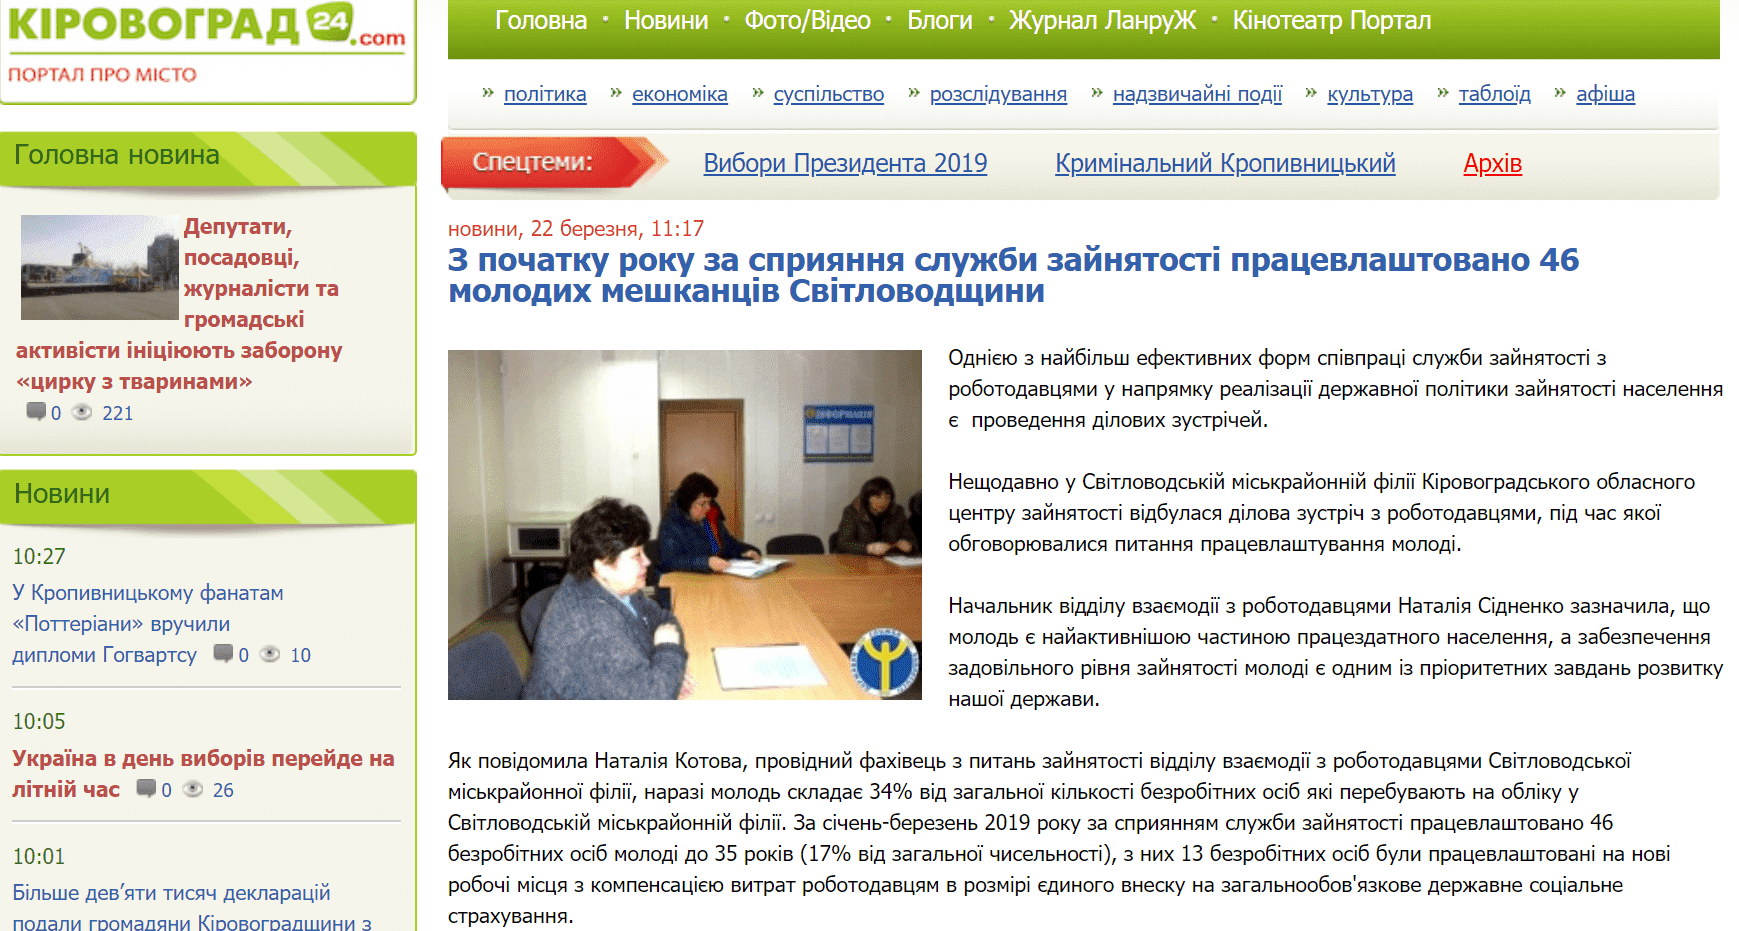 Кіровоград 24: З початку року за сприяння служби зайнятості працевлаштовано 46 молодих мешканців Світловодщини